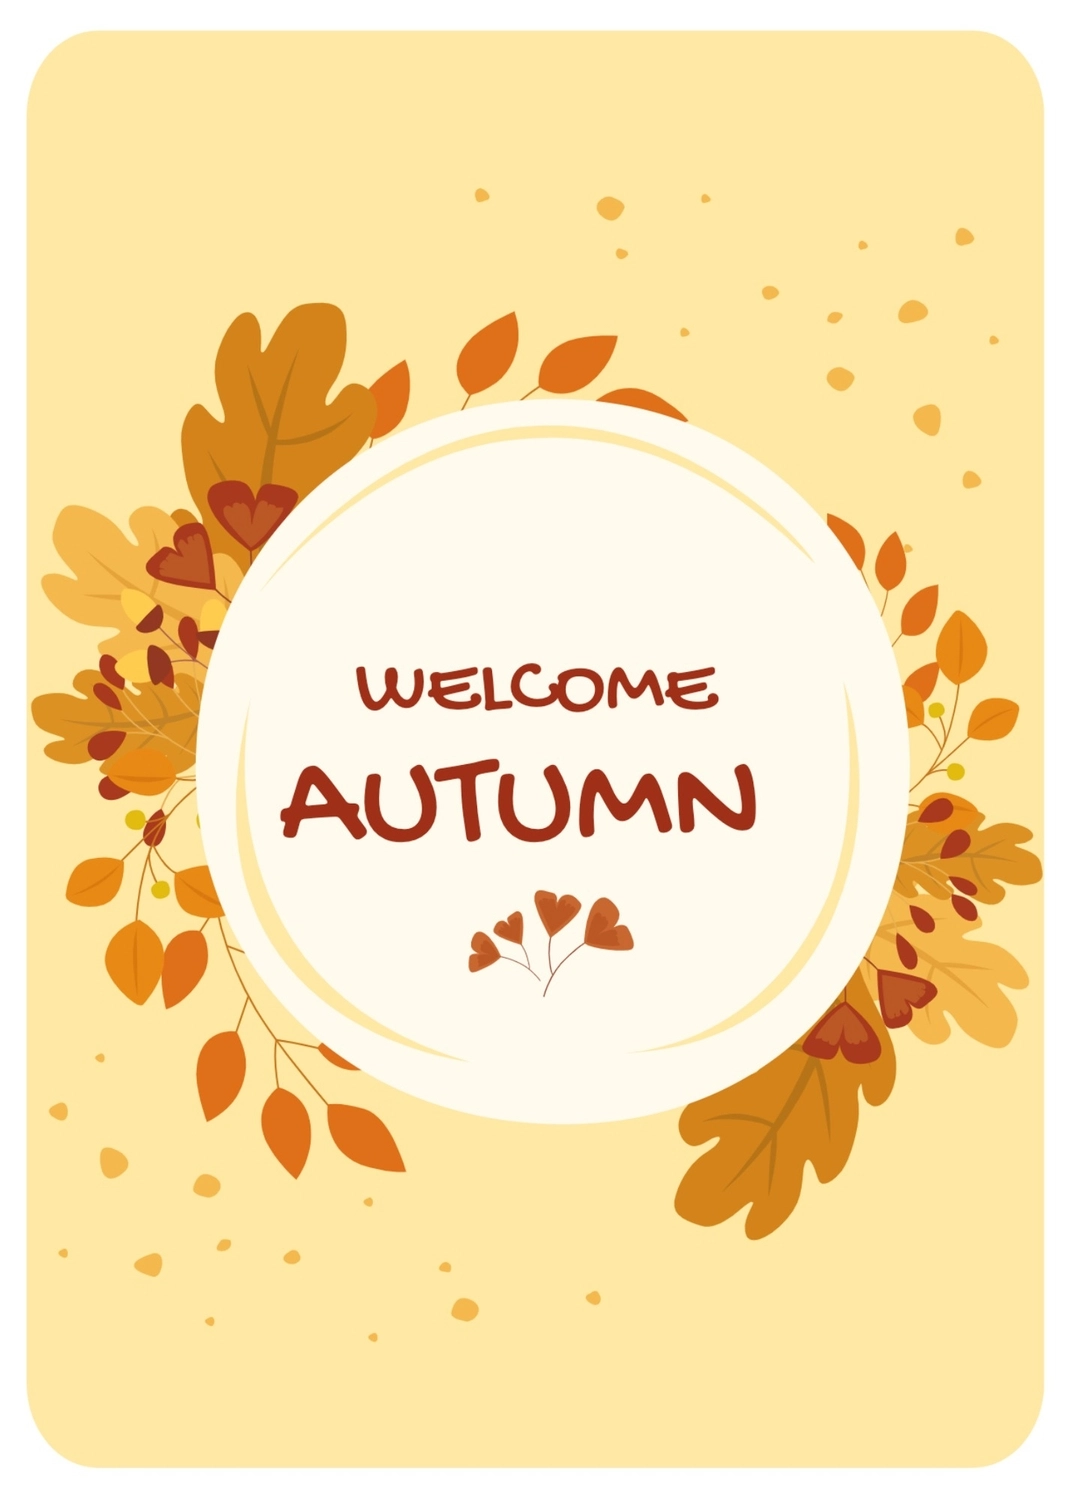 秋のグリーティングカード　紅葉のリース, 단풍, 만들기, 디자인, 메시지 카드 템플릿